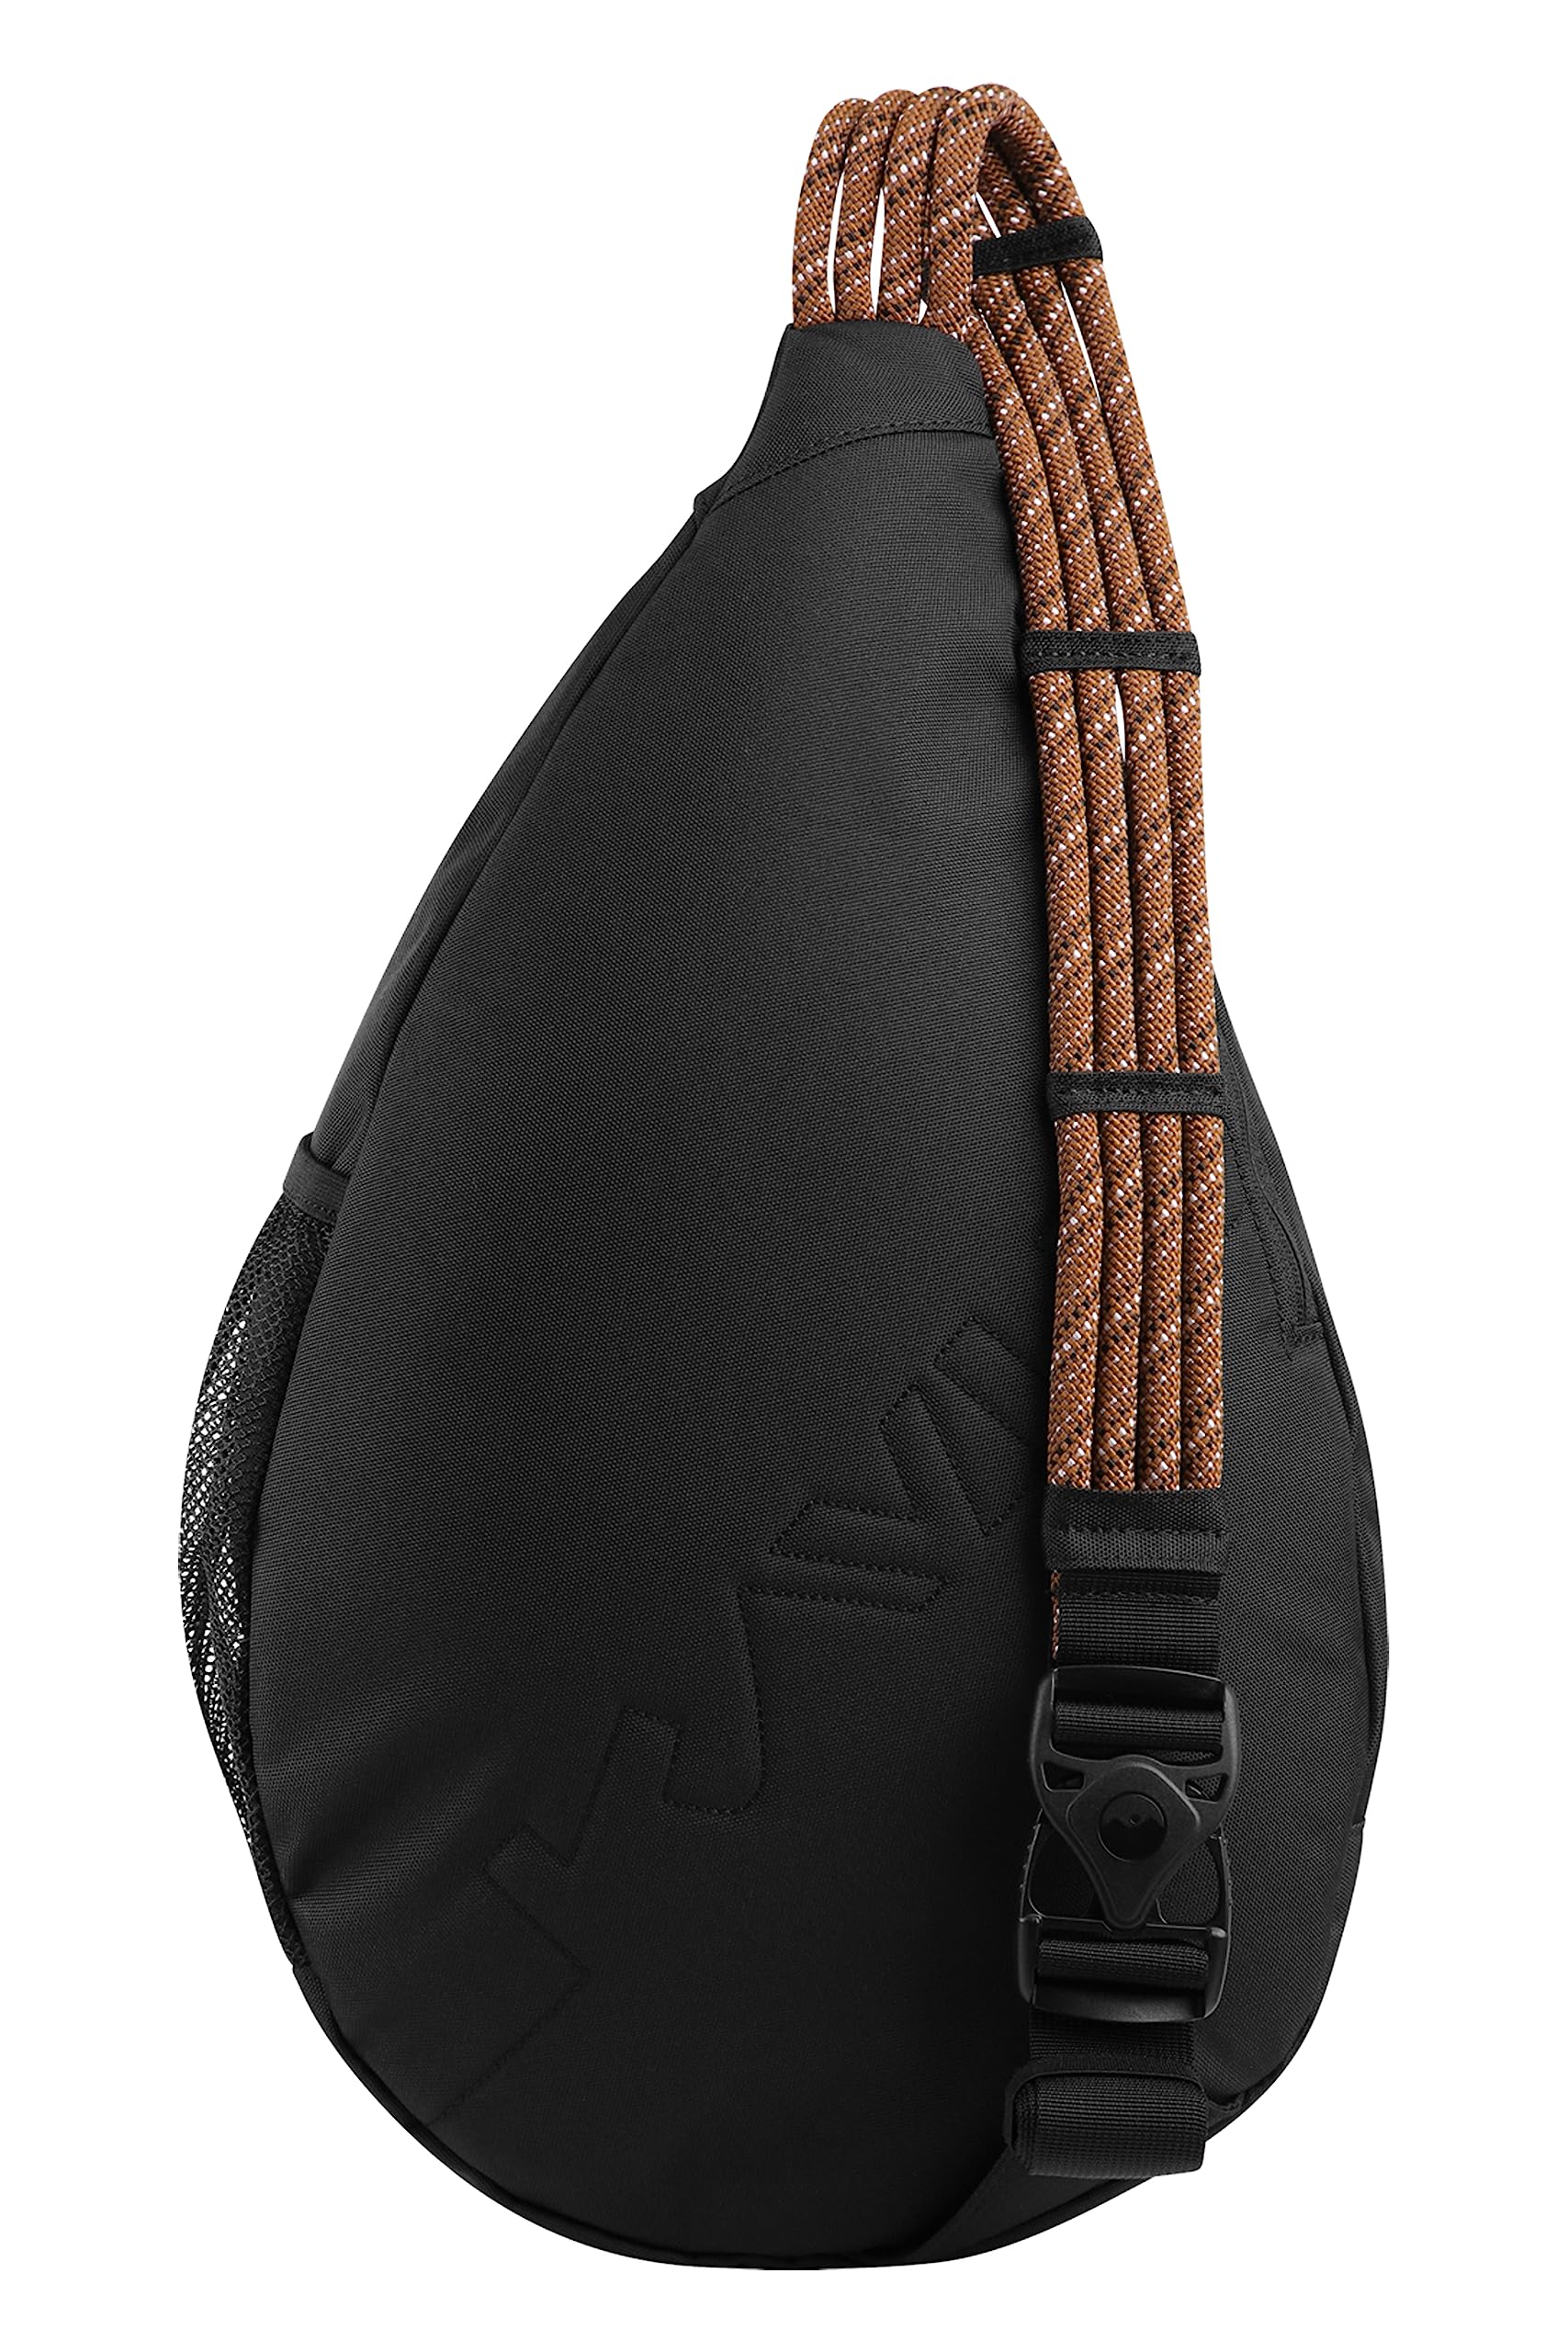 KAVU Paxton Pack Backpack Rope Sling Bag - Jet Black